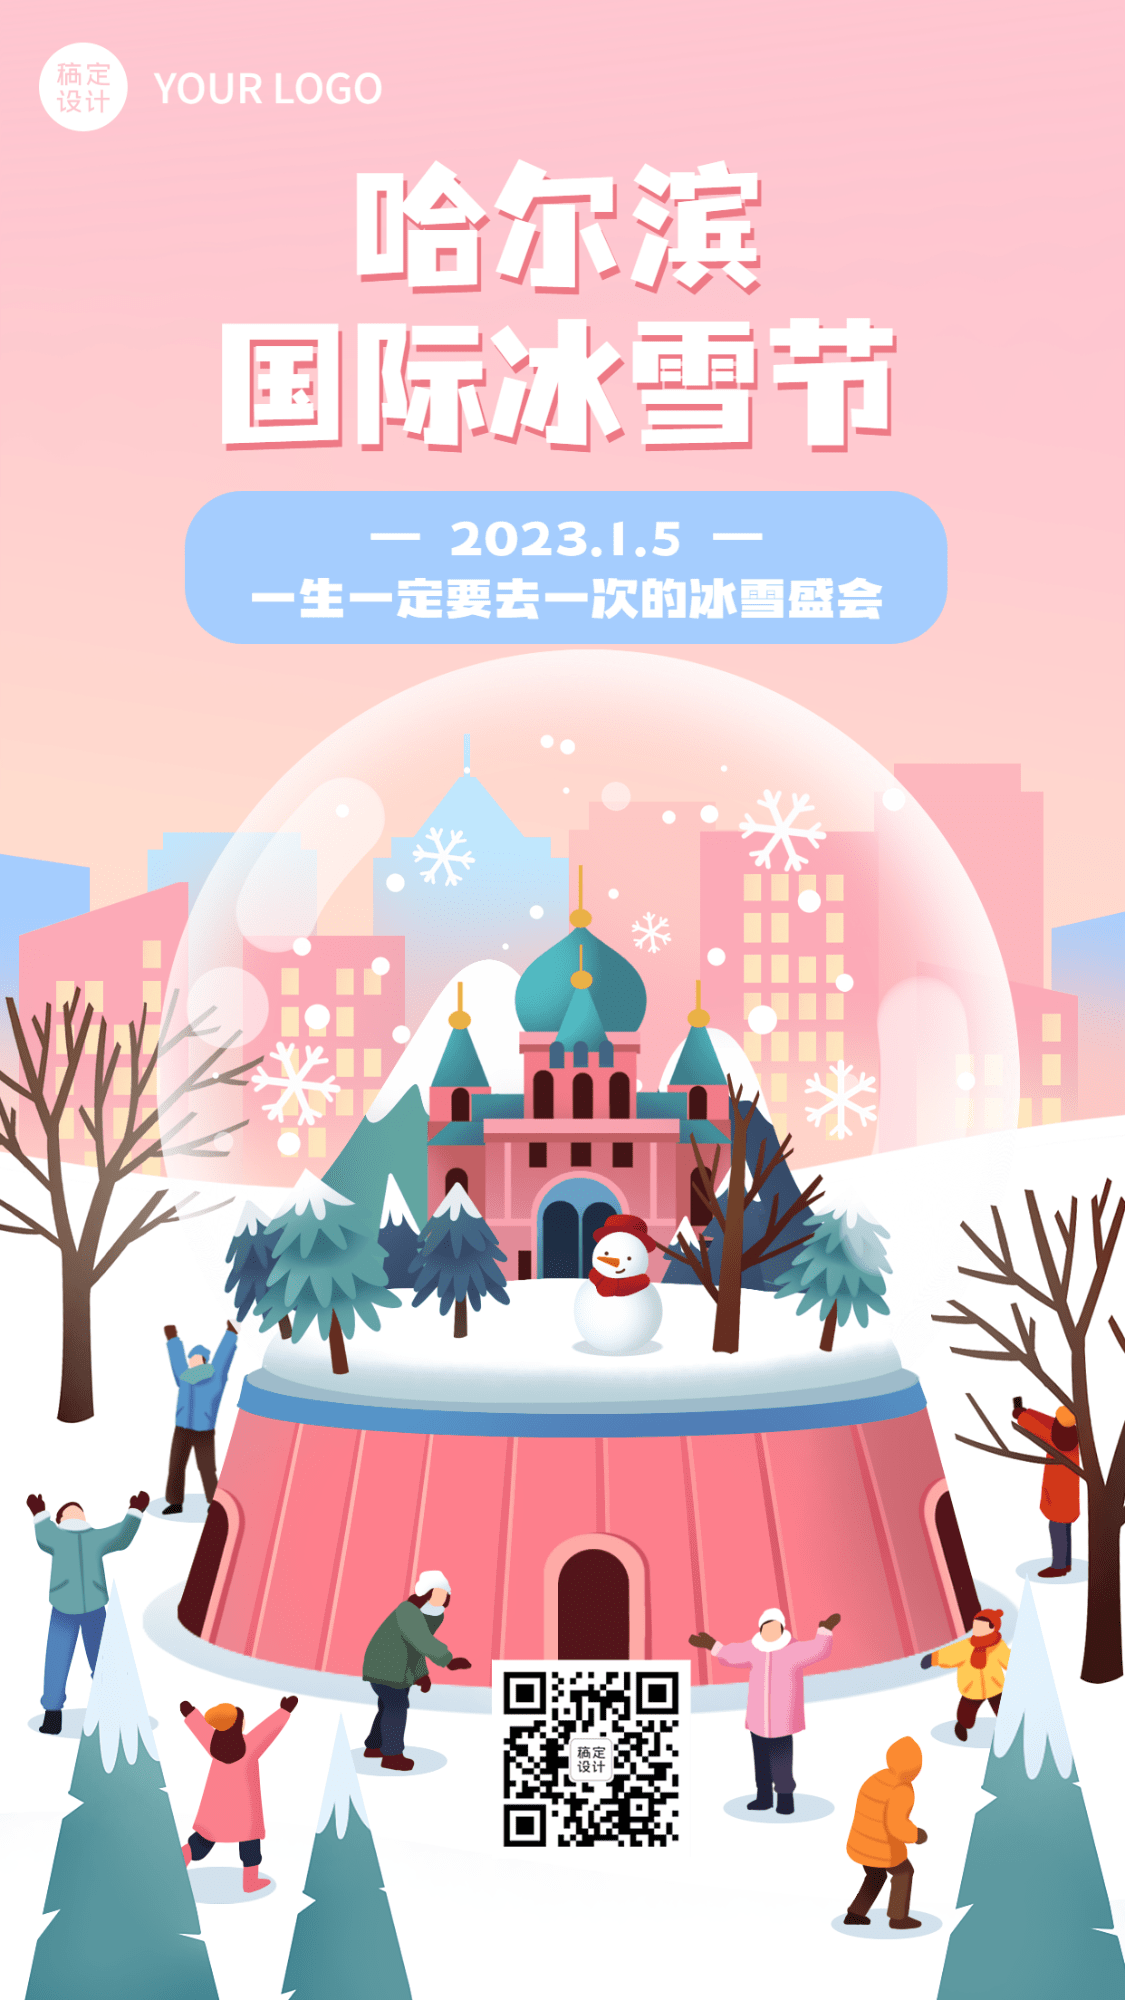 冬季旅游哈尔滨国际冰雪节活动宣传手绘海报预览效果